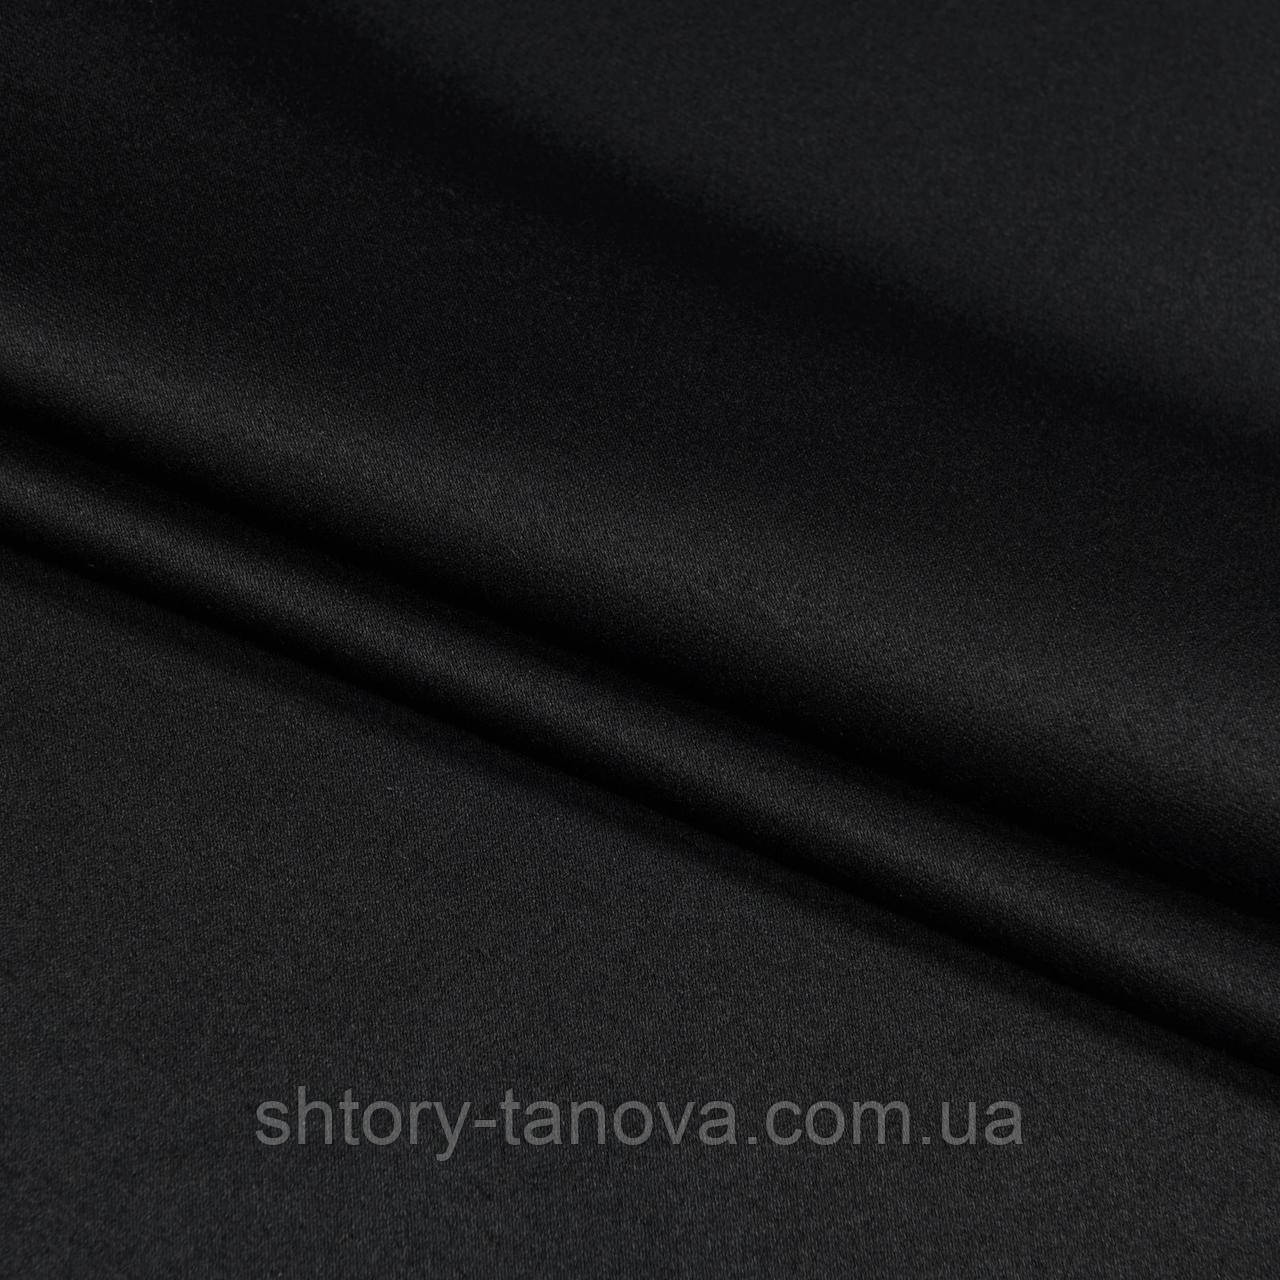 Блекаут економ blackout чорний тканина для штор, щільні портьєри в вітальню, зал, спальню